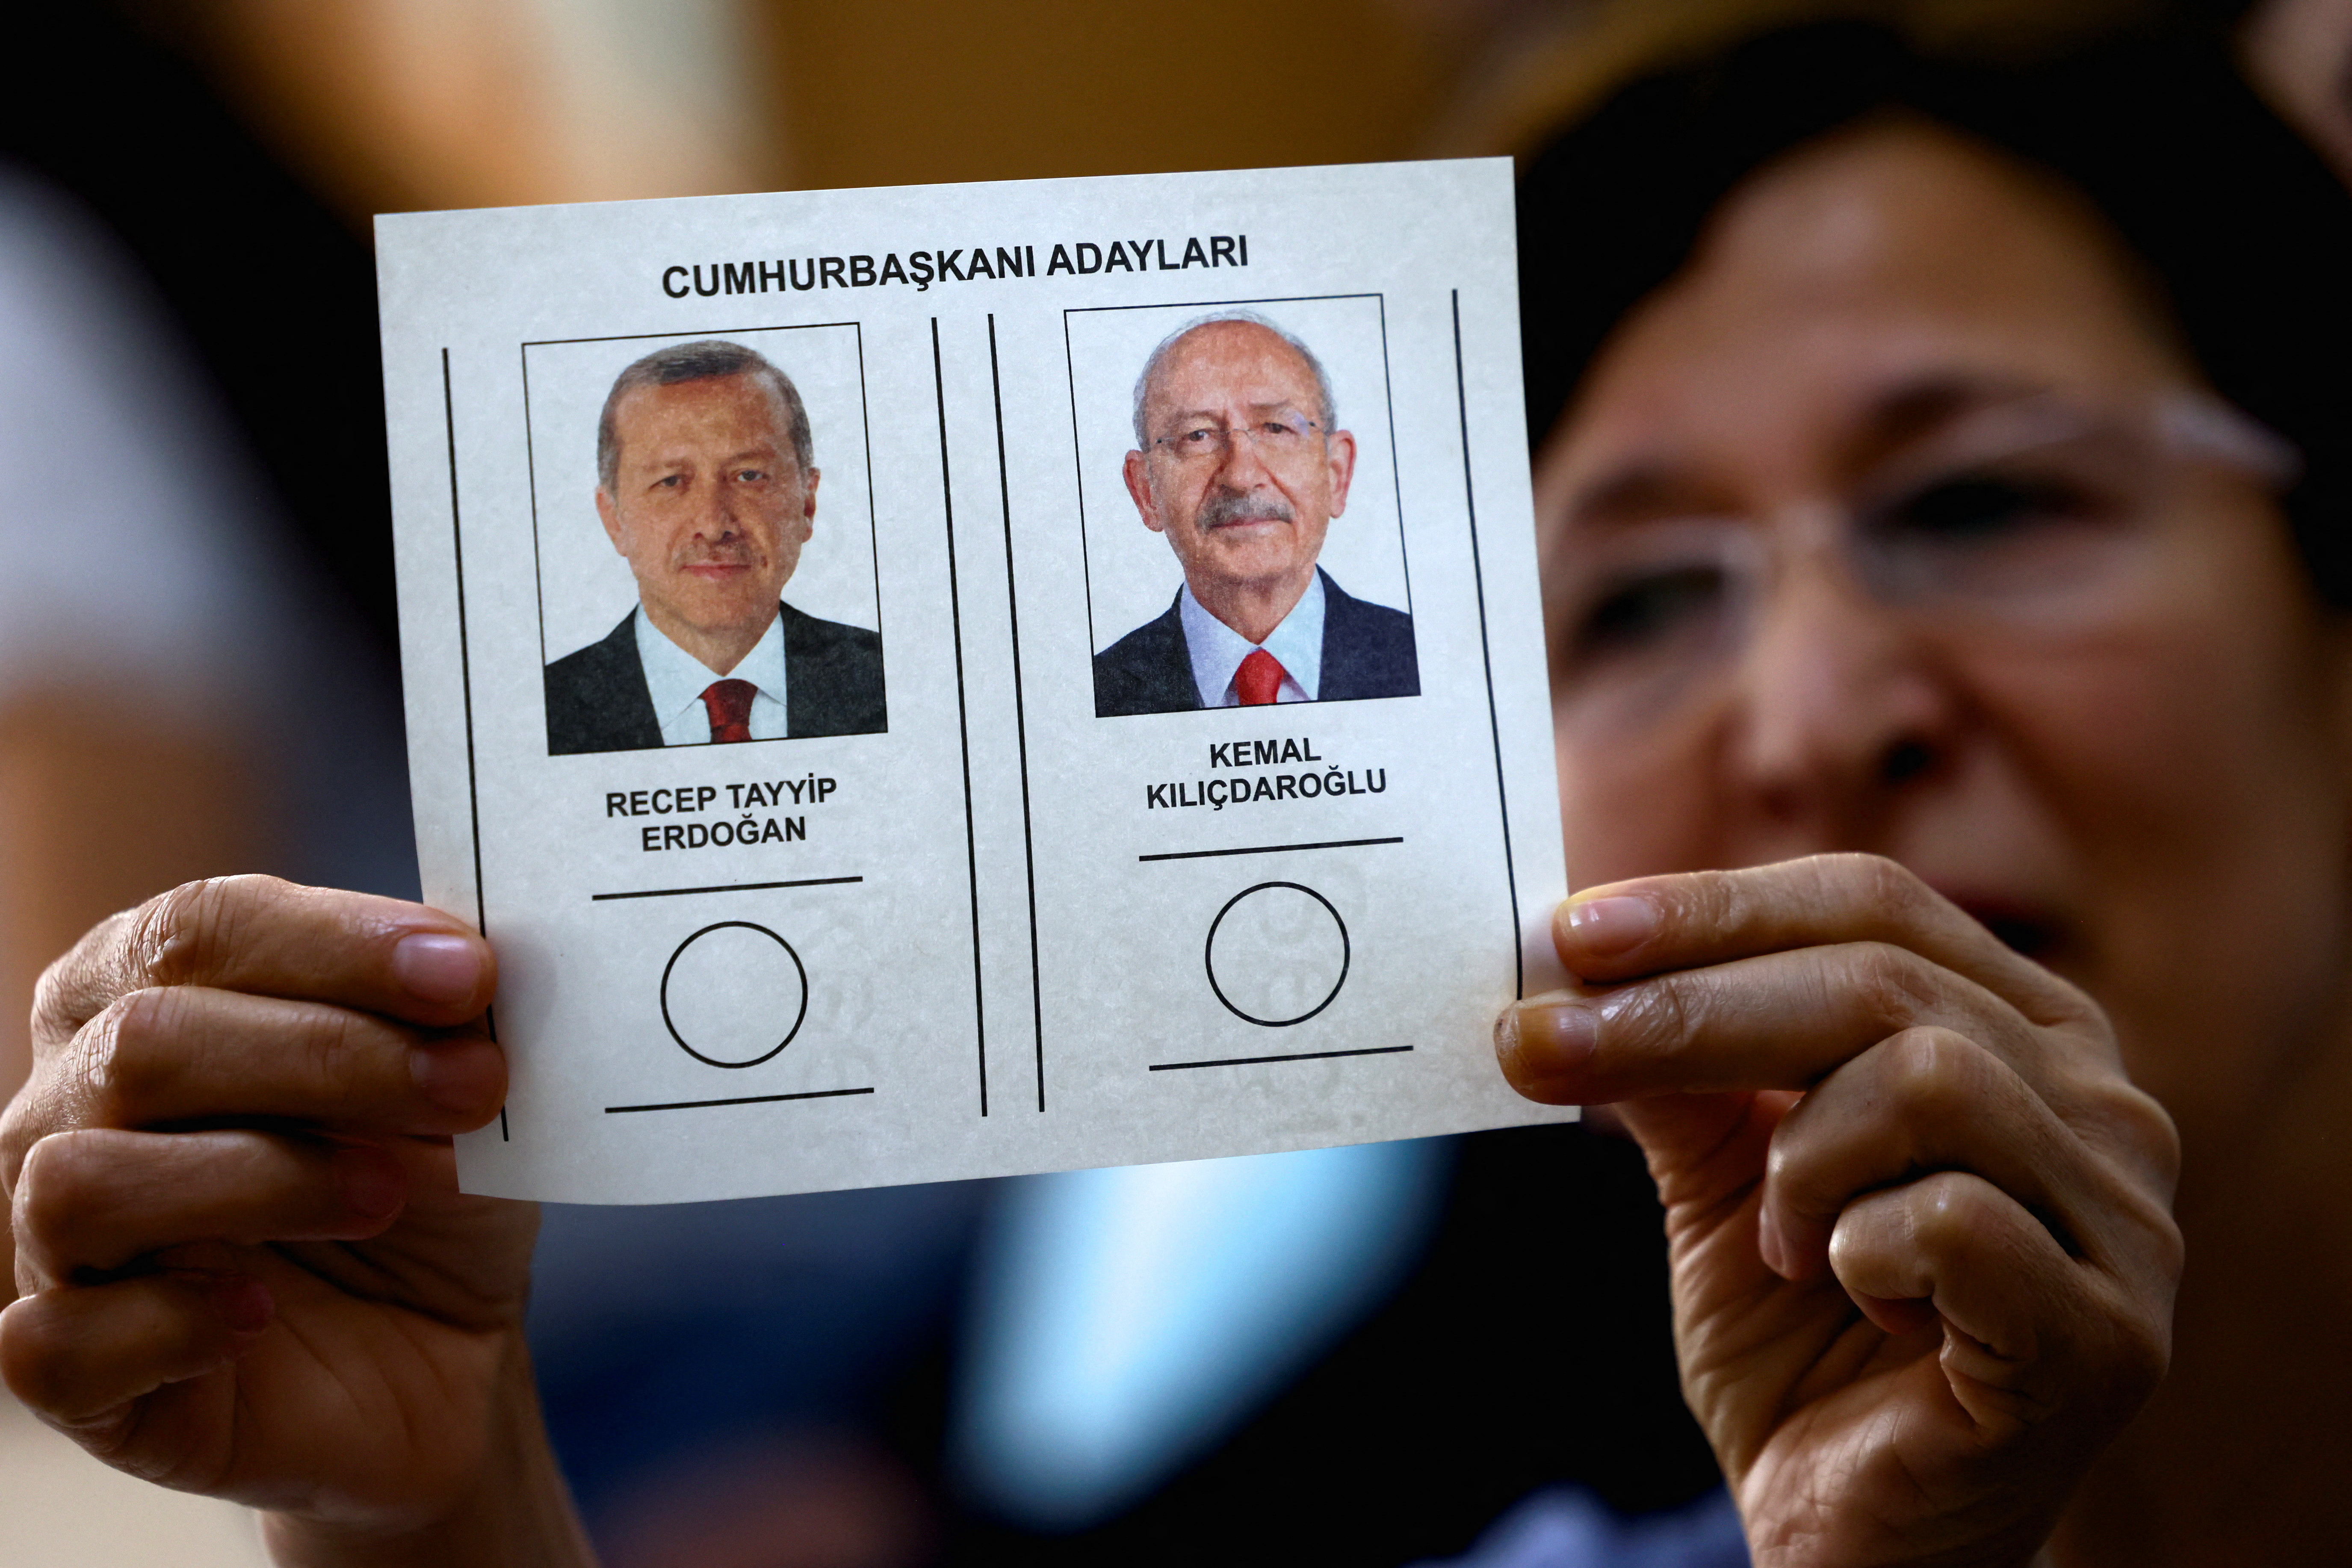 Elecciones en Turquía: más de 60 millones de ciudadanos votan en una inédita segunda vuelta entre Erdogan y Kilicdaroglu